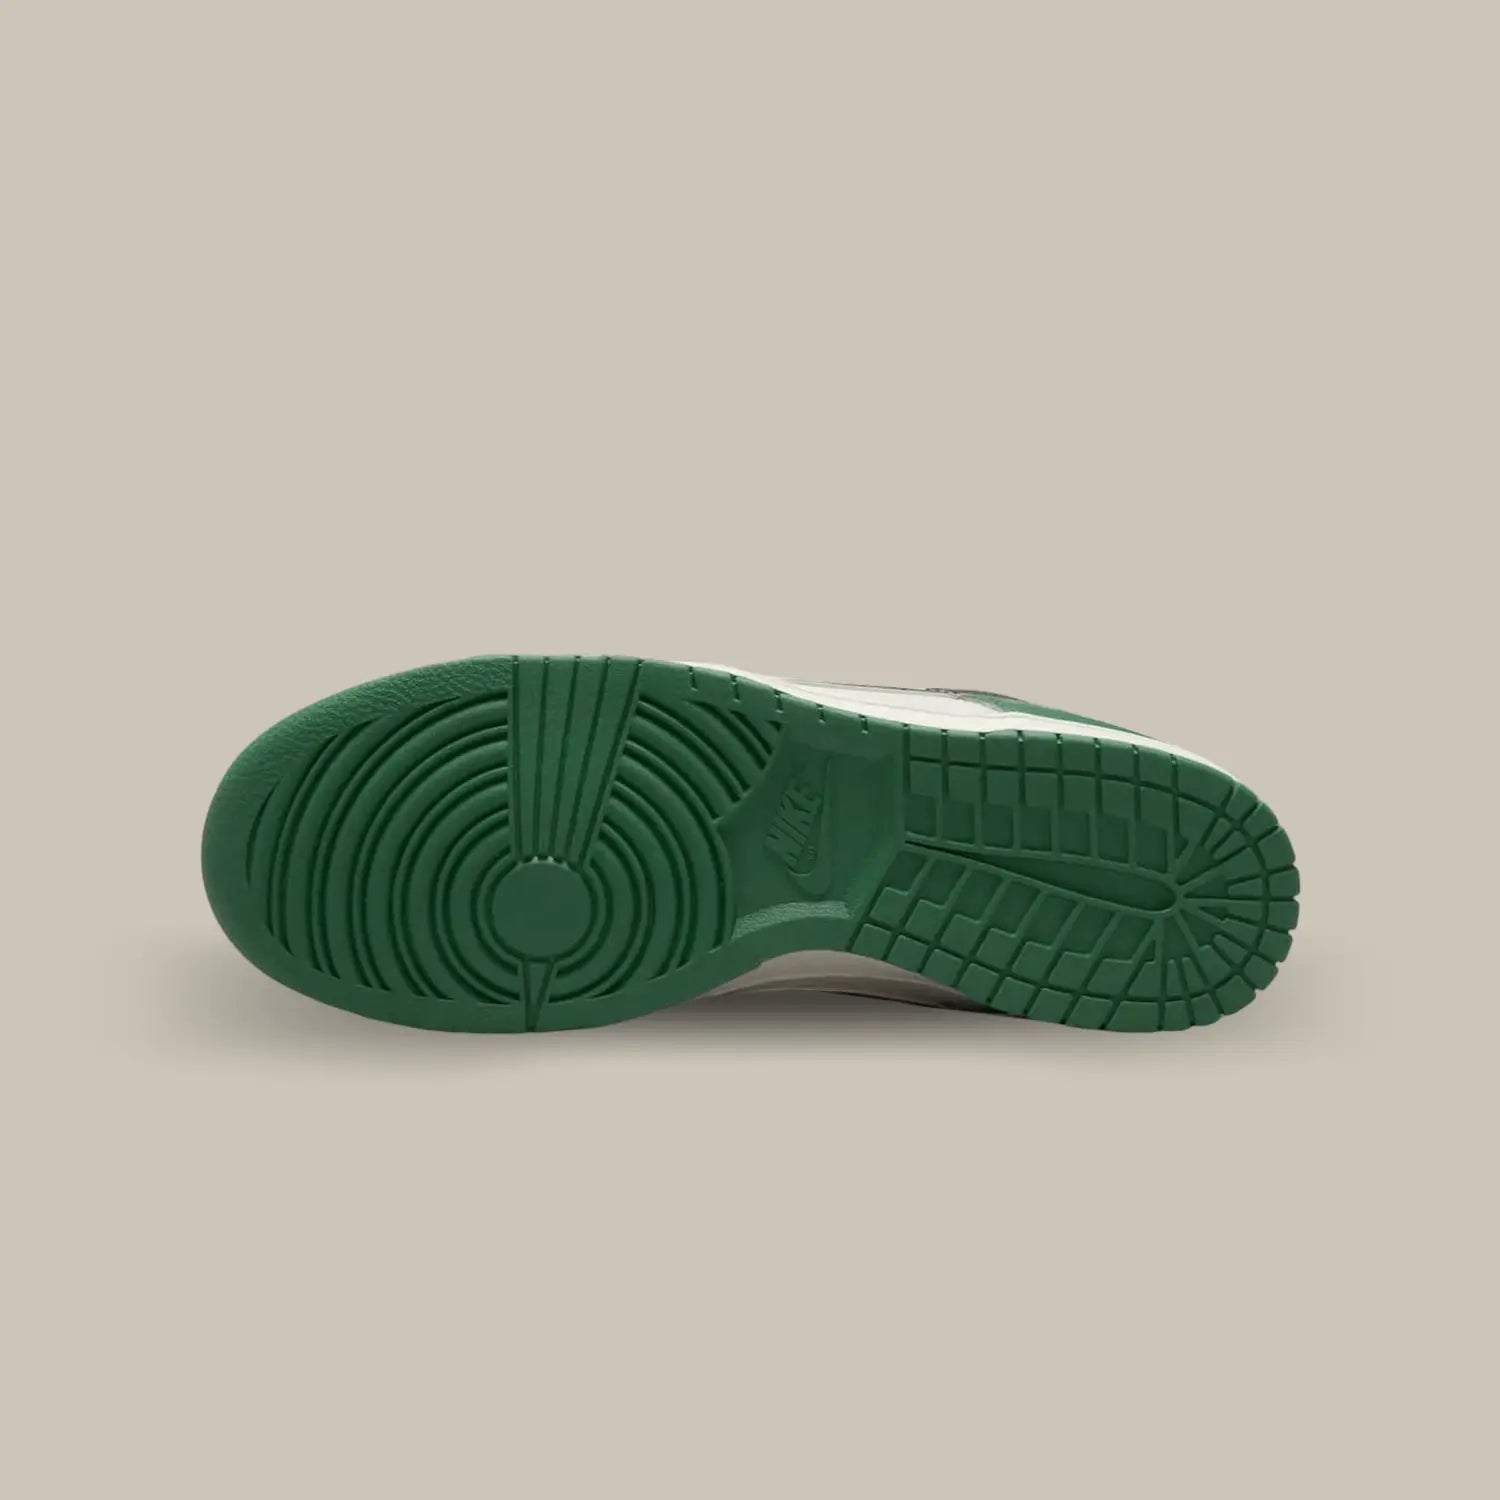 La semelle de la Nike Dunk Low SE Lottery Green Pale Ivory de couleur verte.